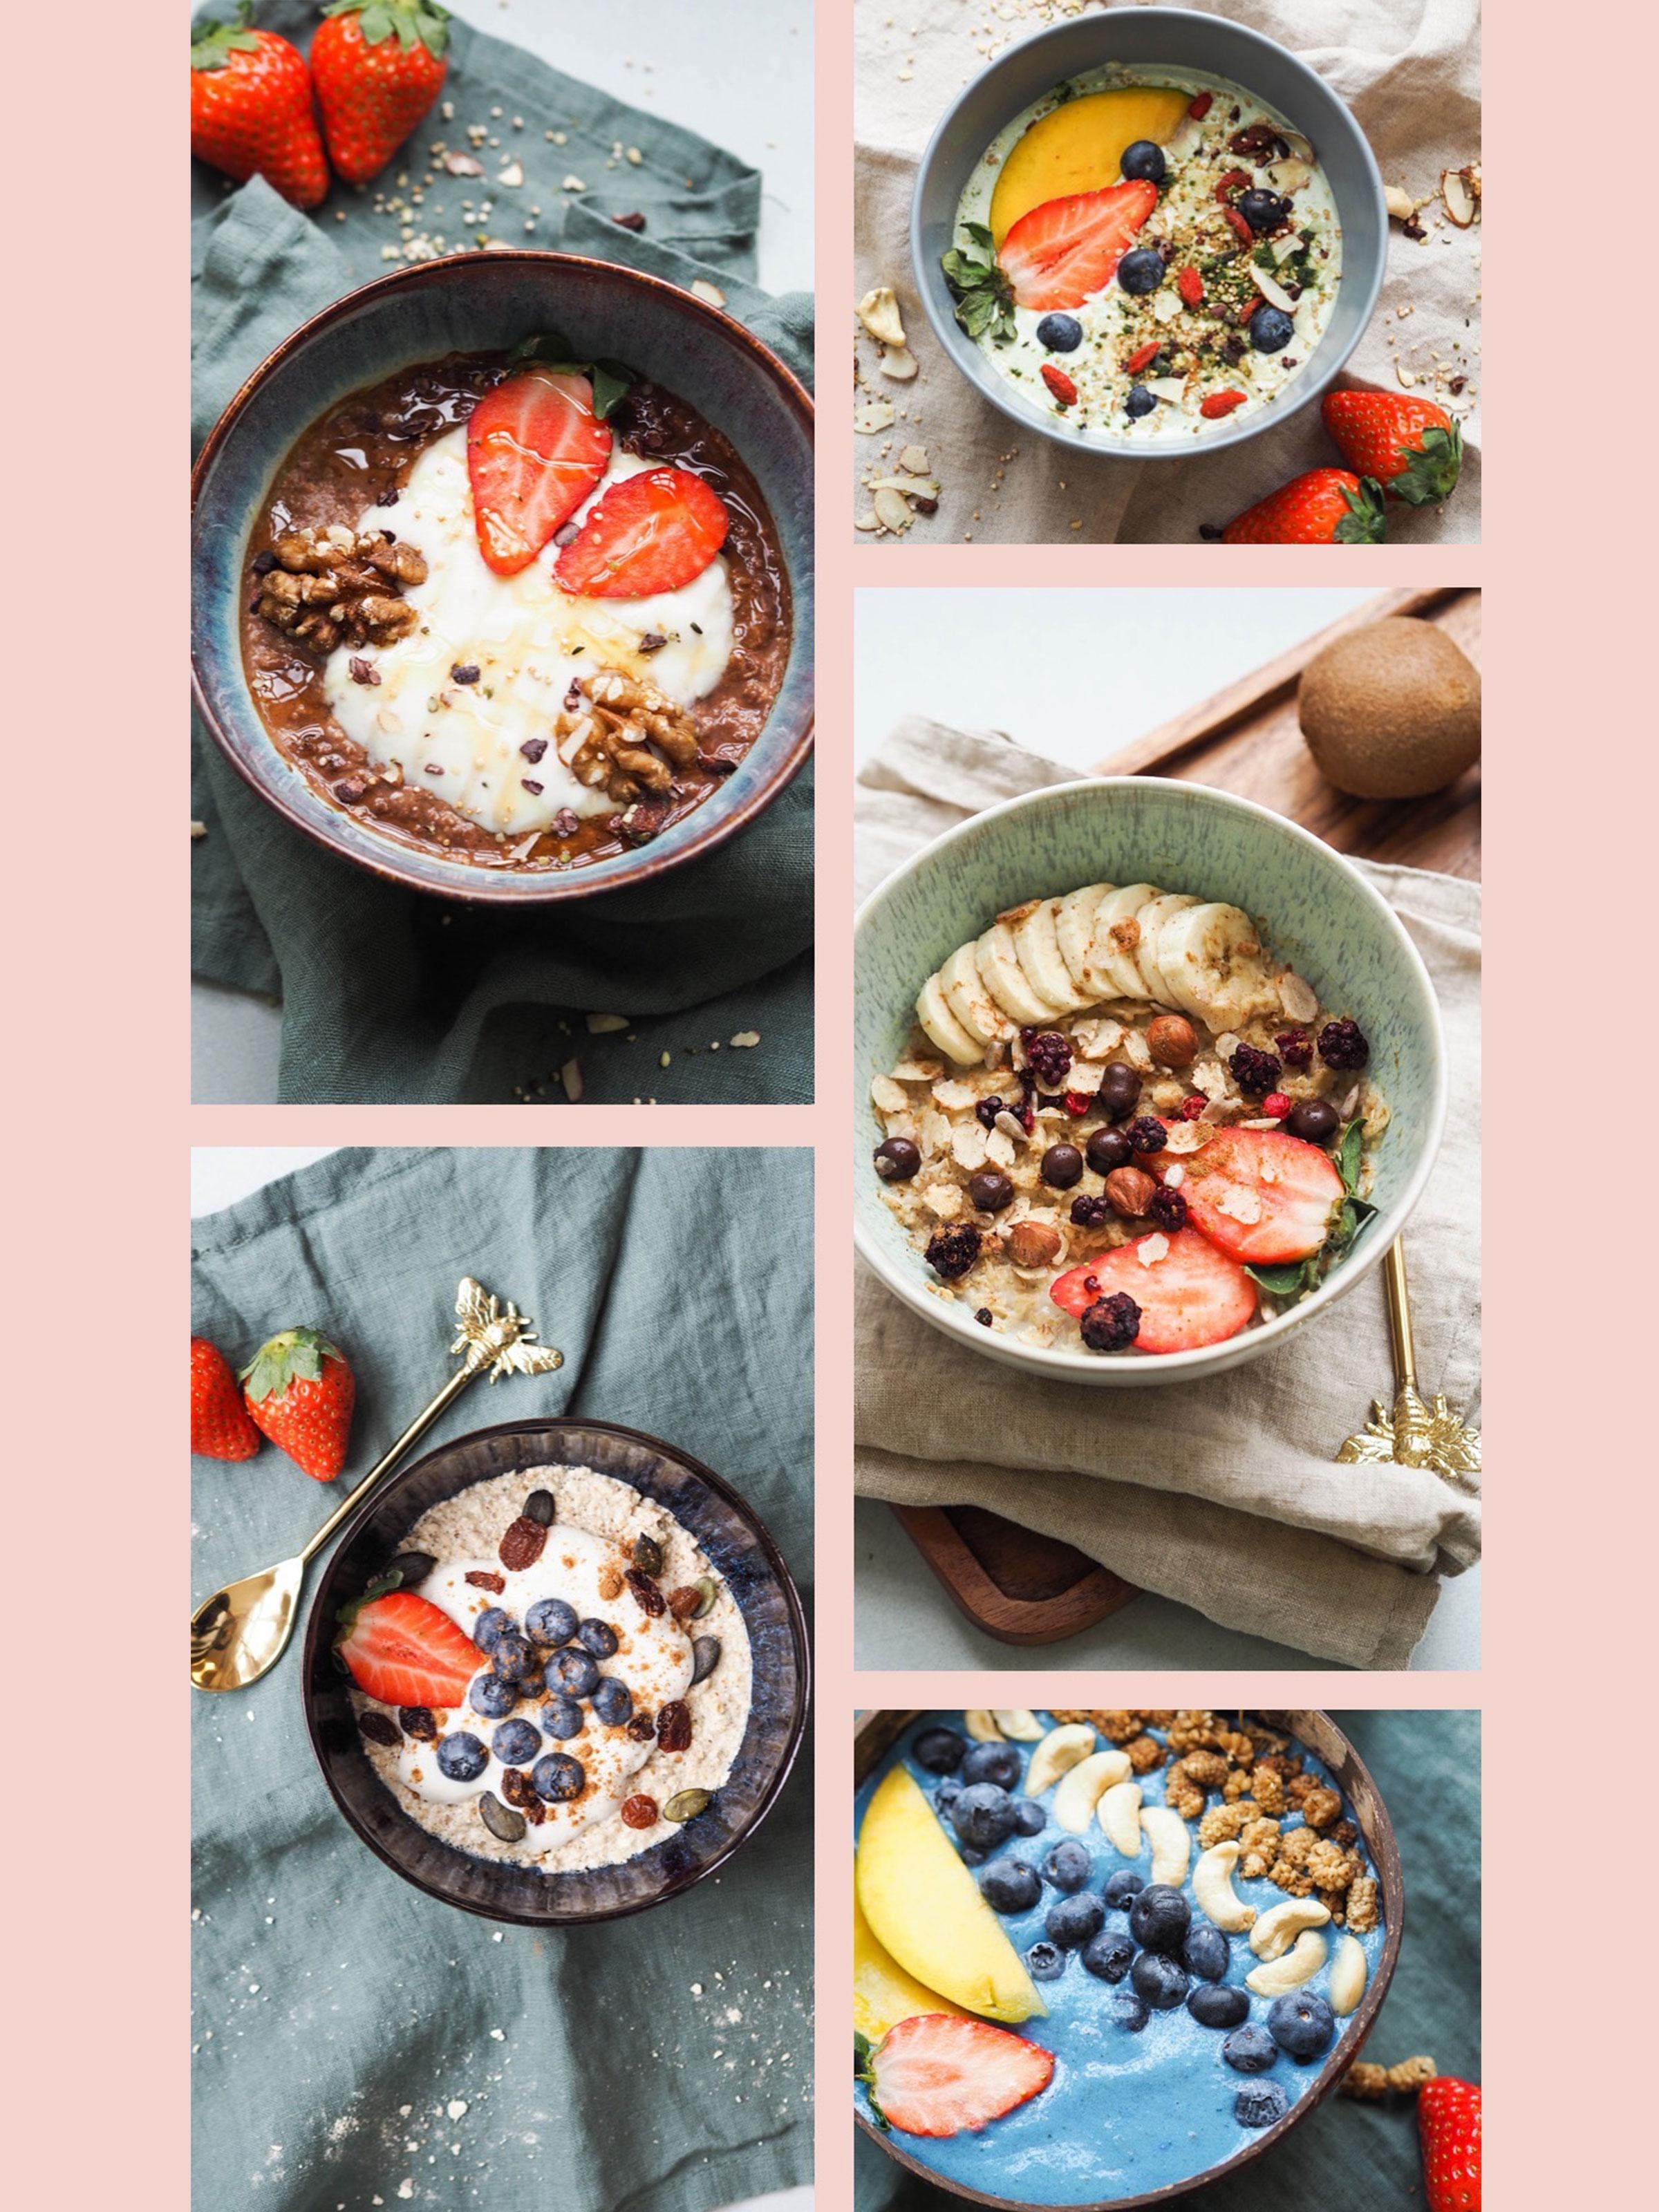 Wie wär's mit einer #frühstücksbowl? Hier kommen unsere Ideen für einen leckeren & gesunden Start in den Tag 🍓